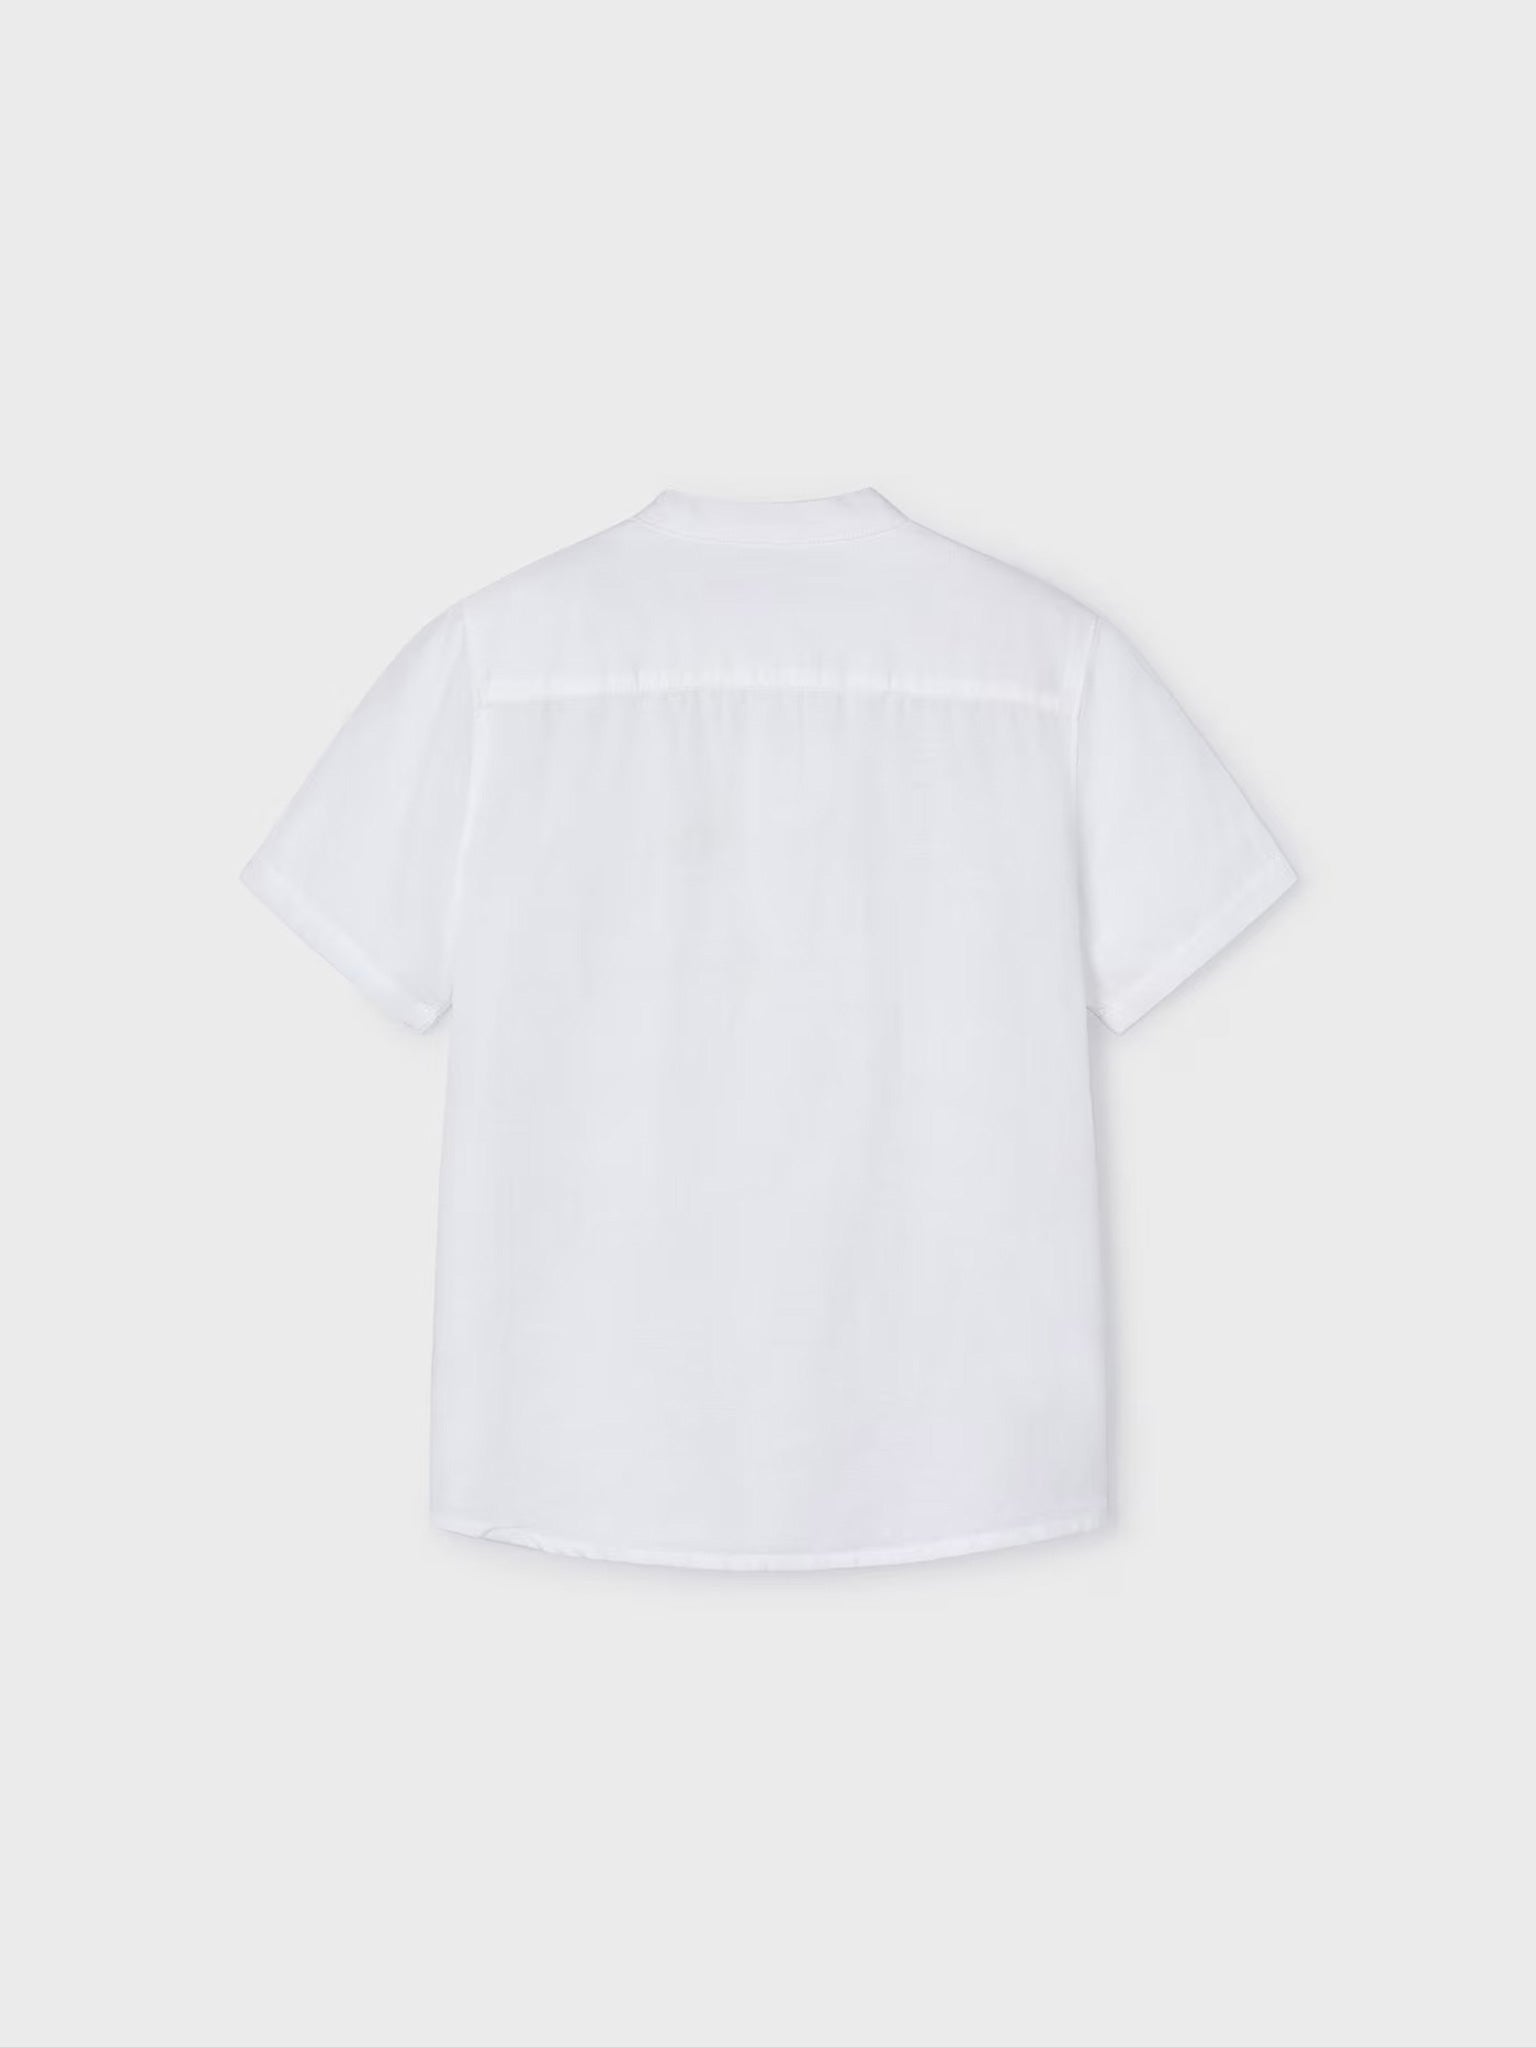 Παιδικό πουκάμισο λινό γιακάς mao 24-03113-054 | 24-03113-054